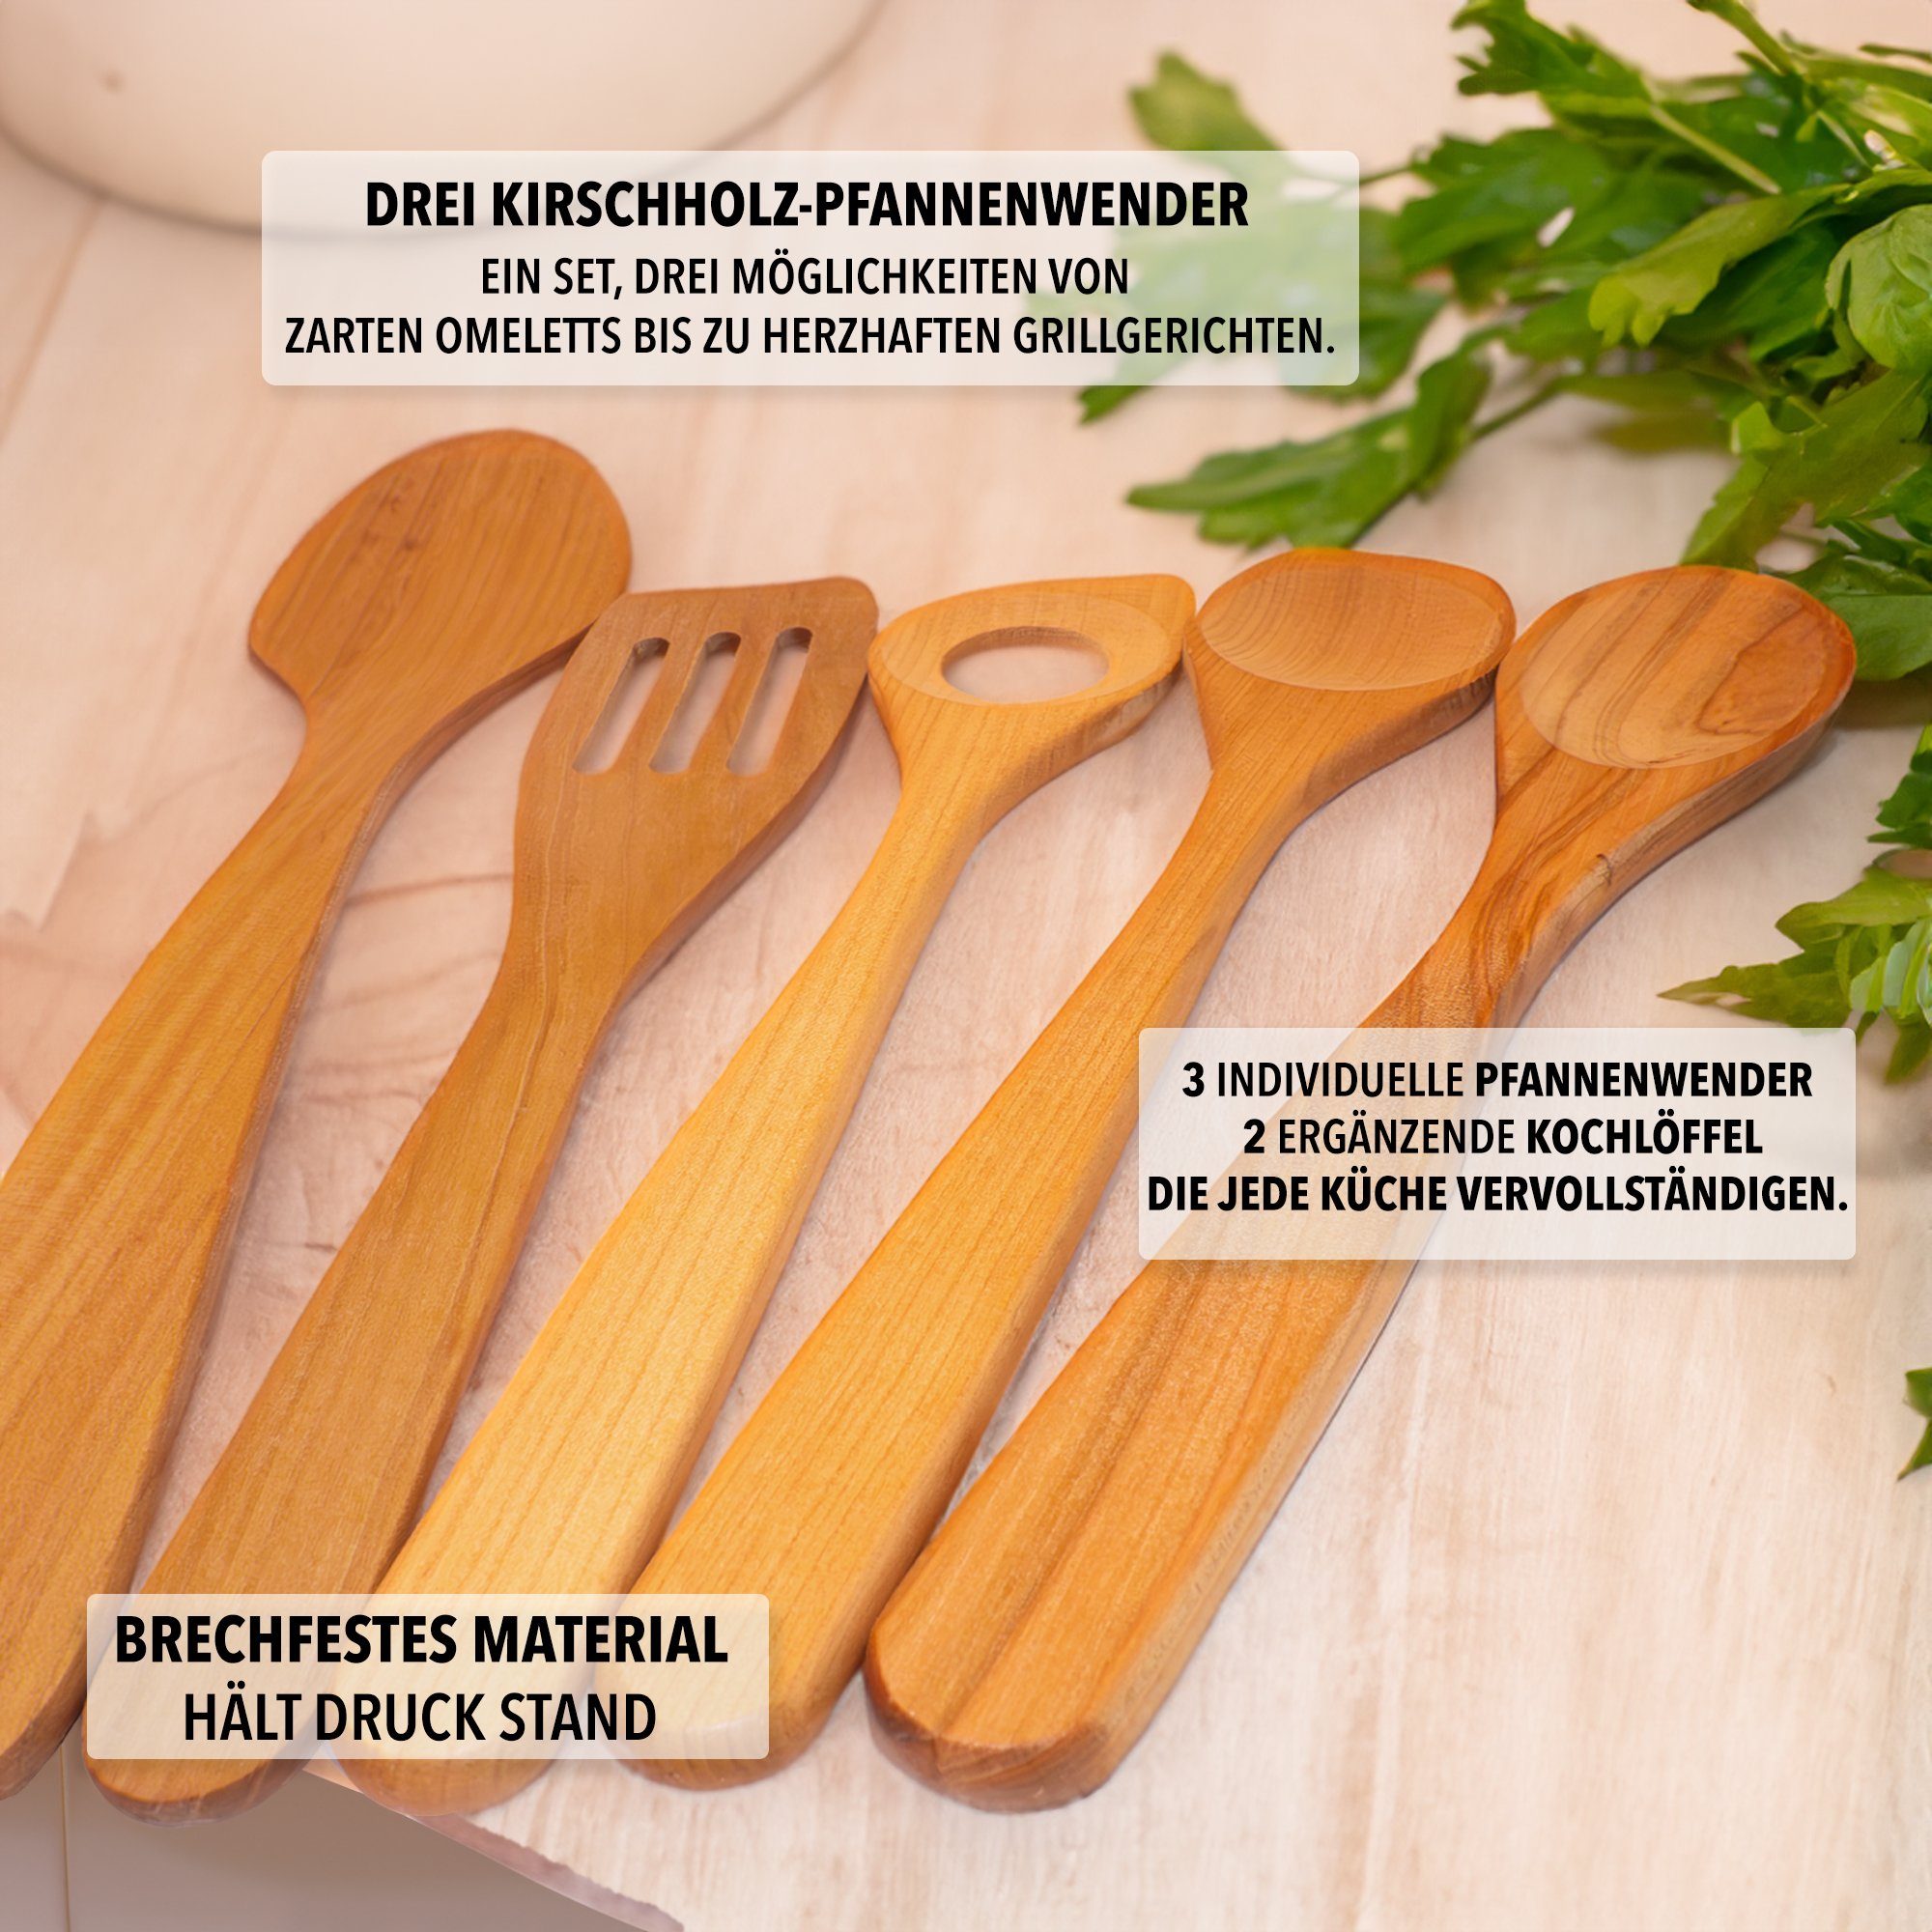 SOHFA nachhaltig Kirschholz, Küchenutensilien-Set lebensmittelecht 5er Kirschholz Pfannenwender aus schadstofffrei